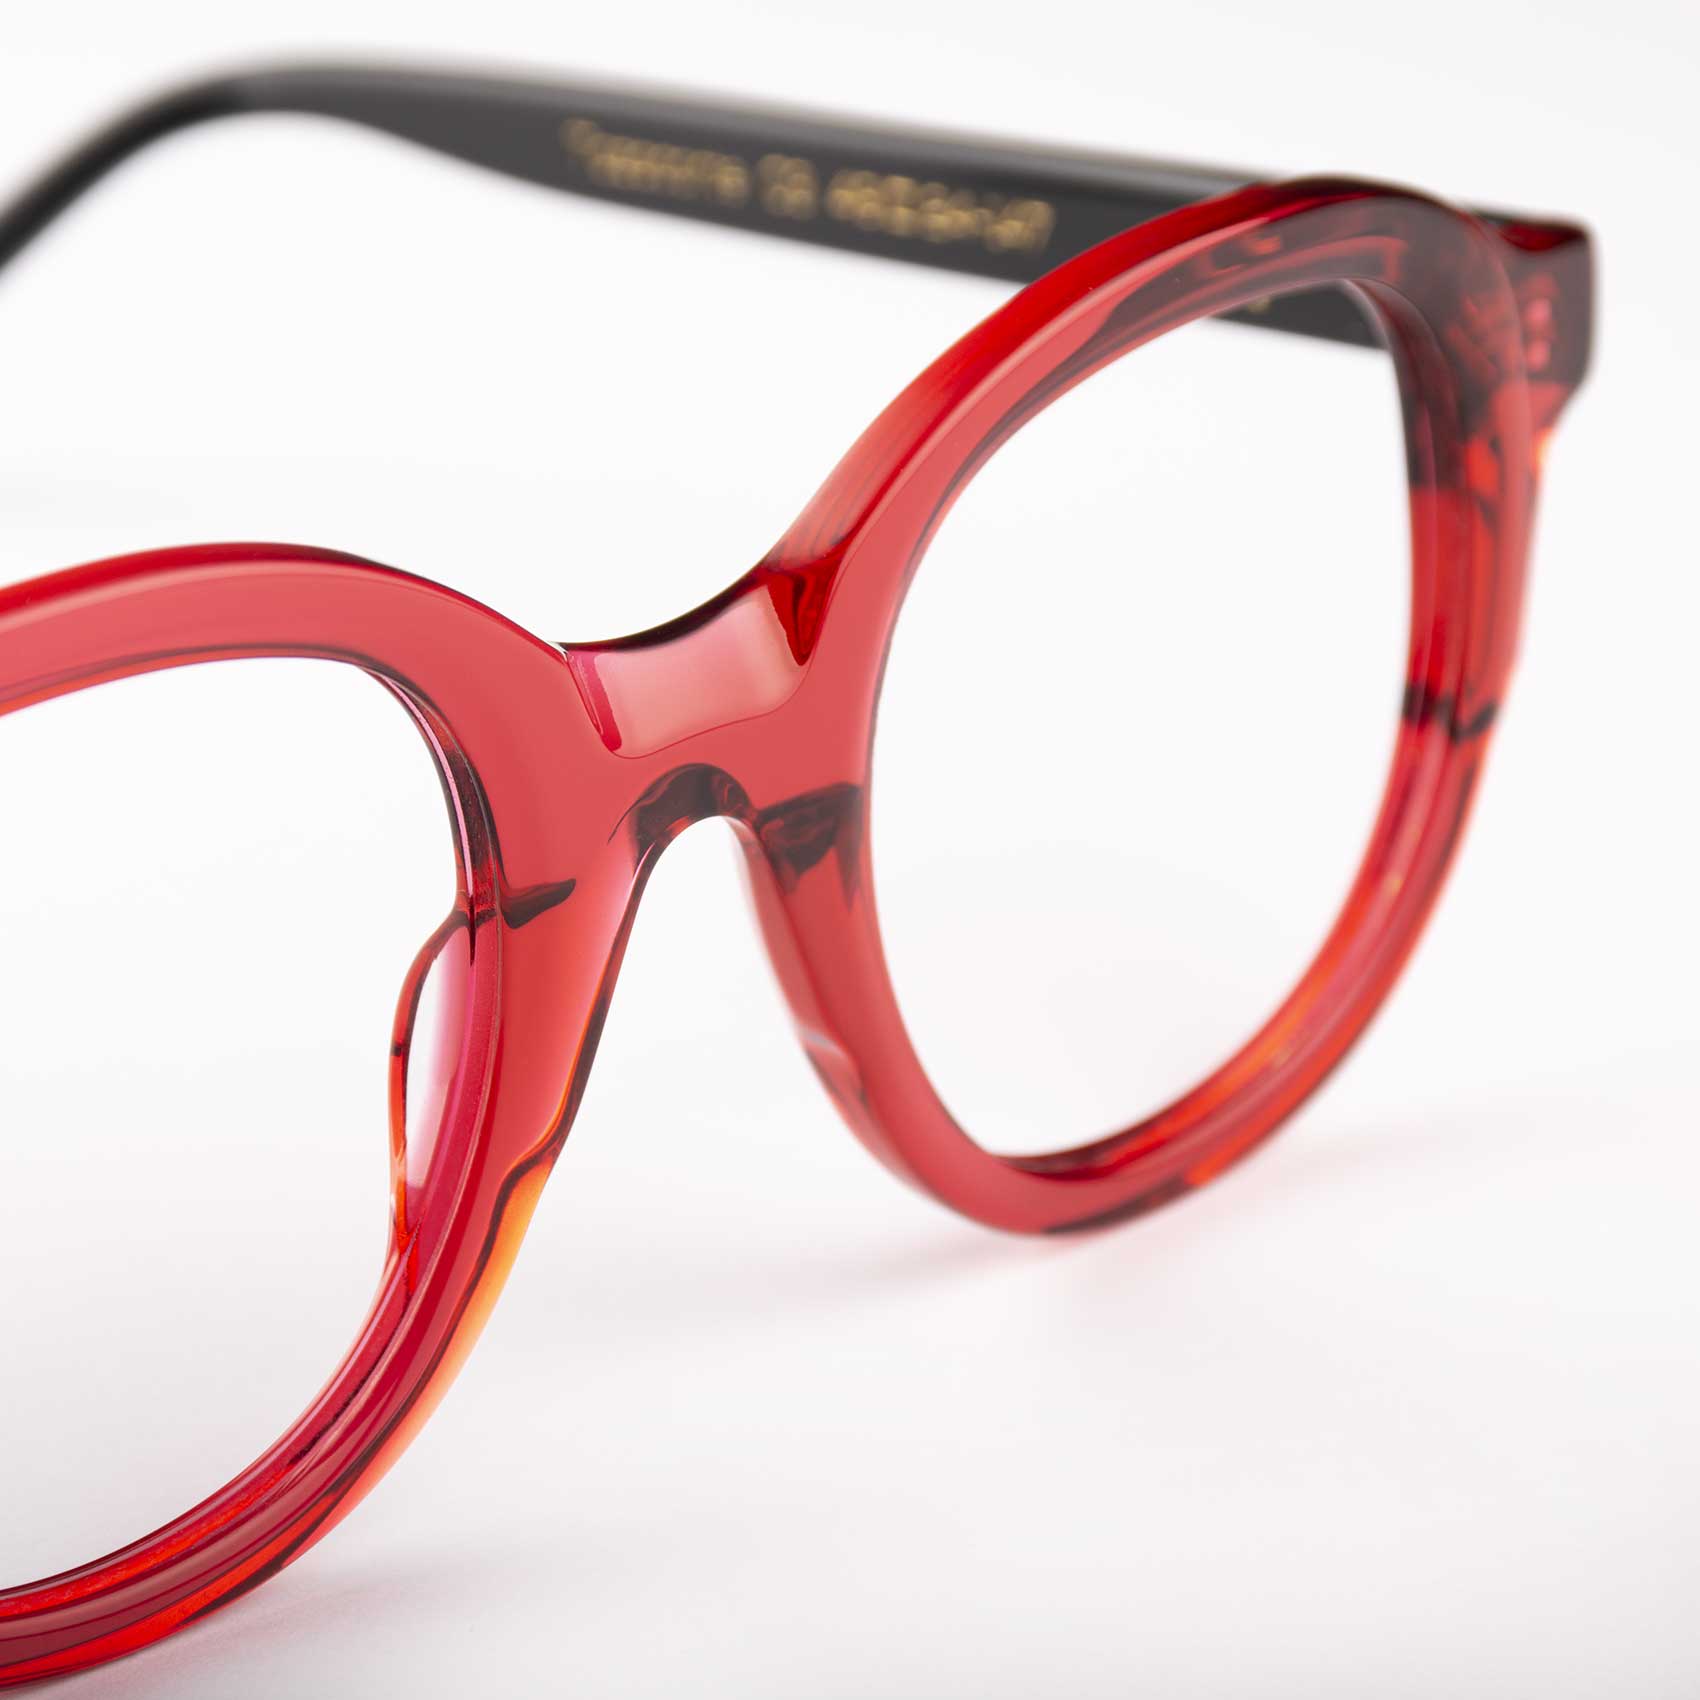 Detalle motura de acetato compostable en gafas grandes de mujer Tazacorte de Proud Eyewear